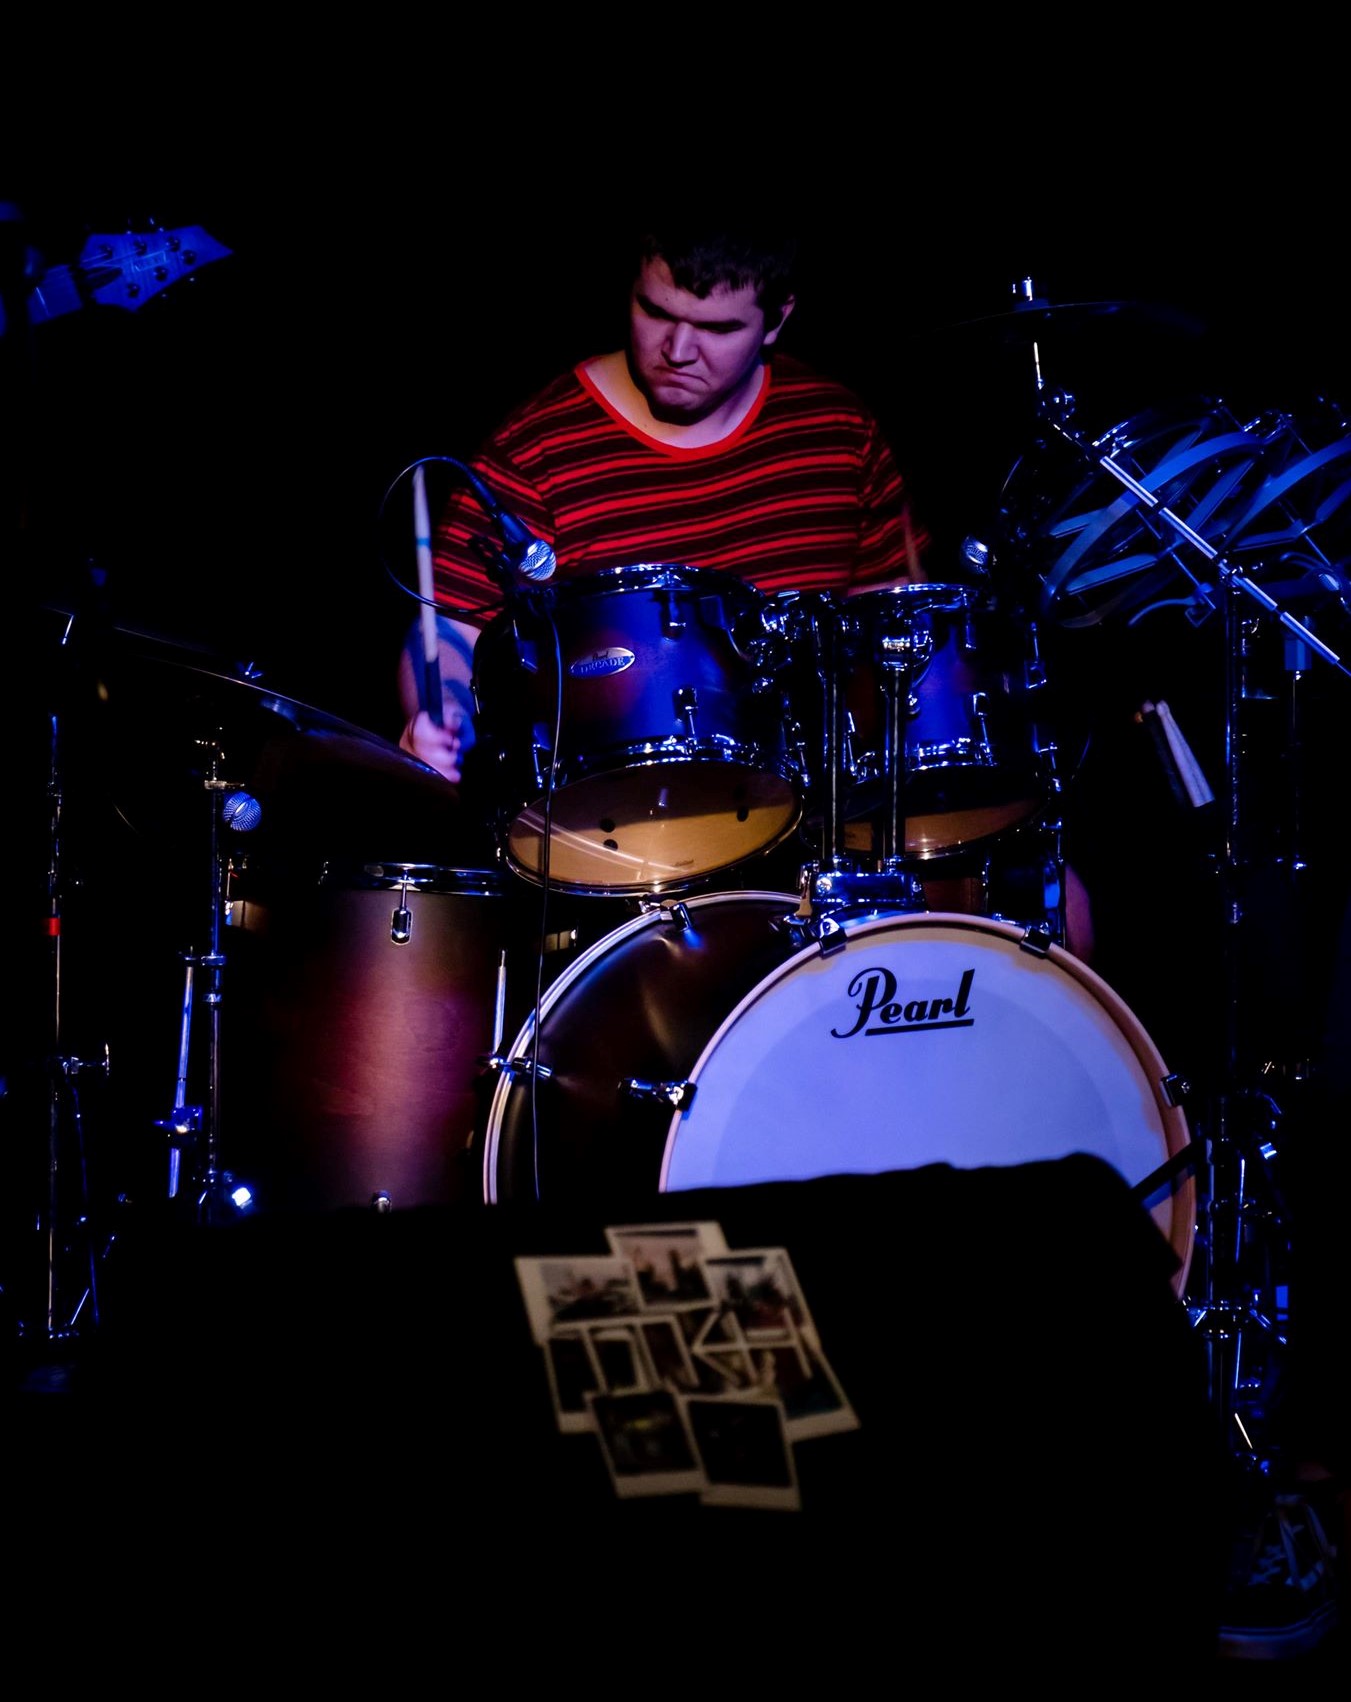 Braedon playing drums